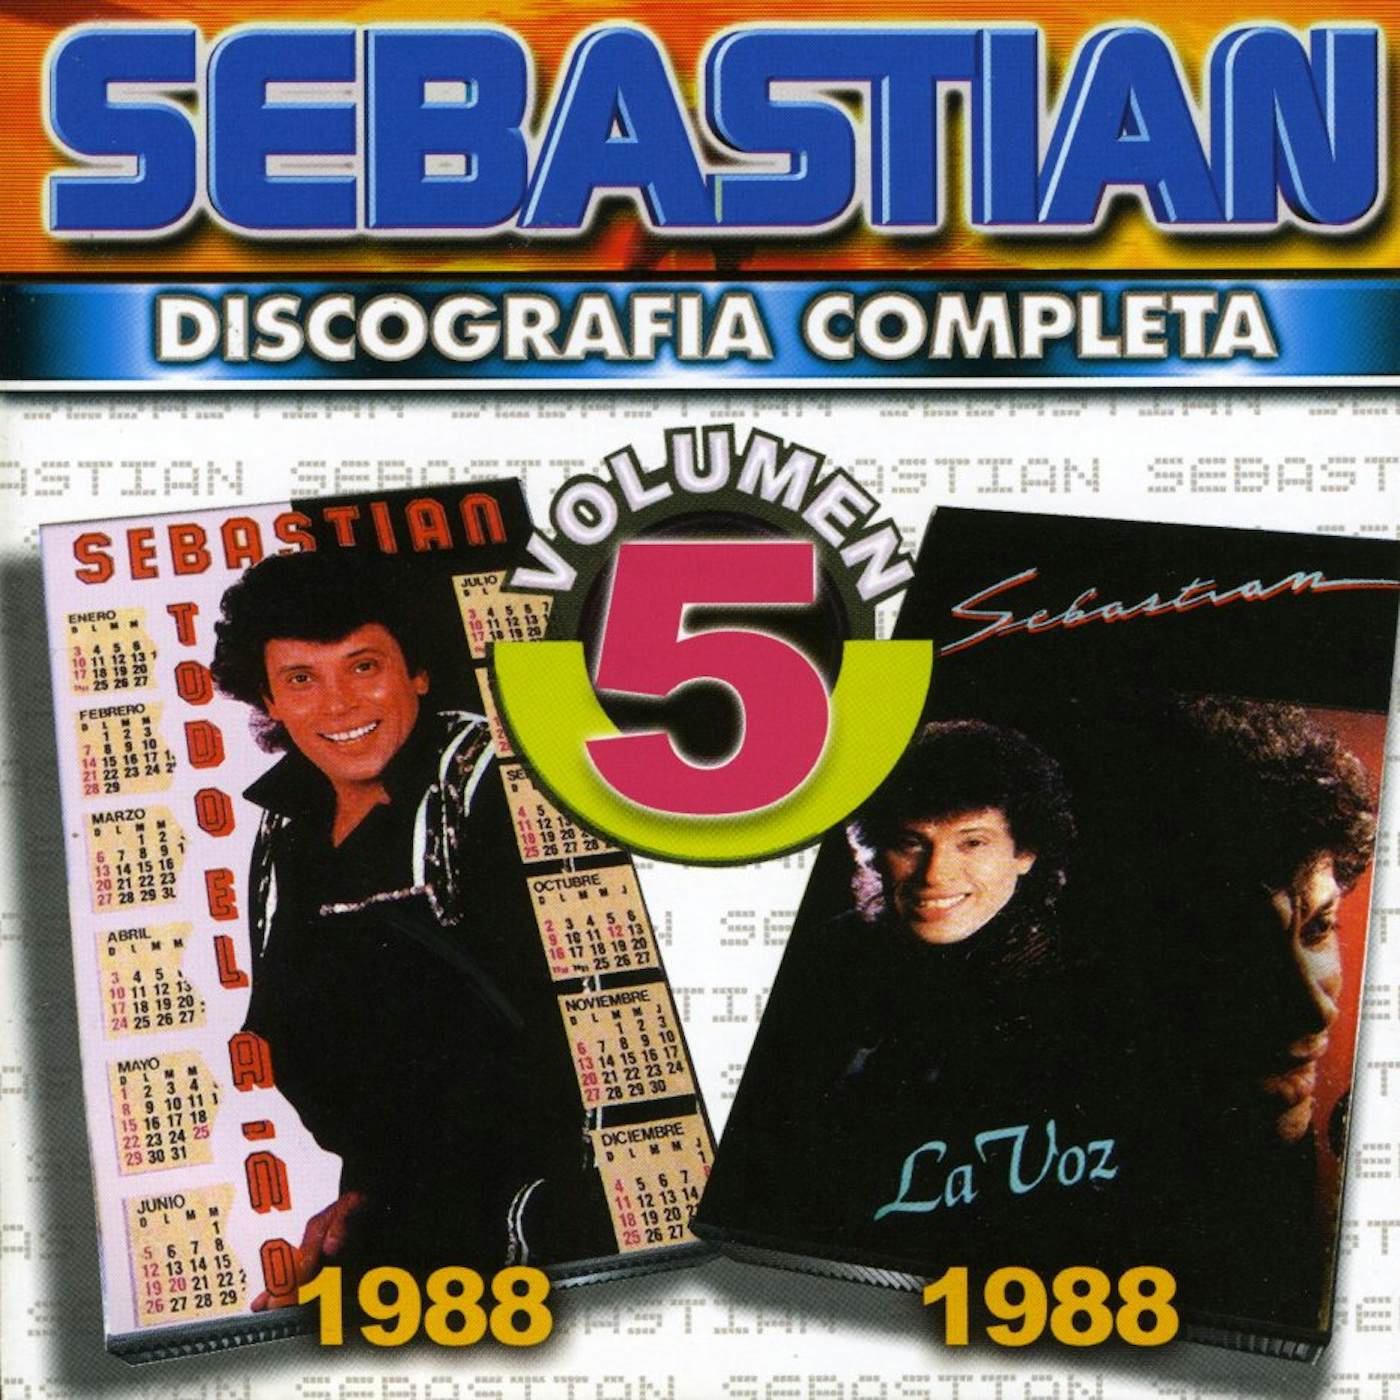 SebastiAn DISCOGRAFIA COMPLETA 5 CD